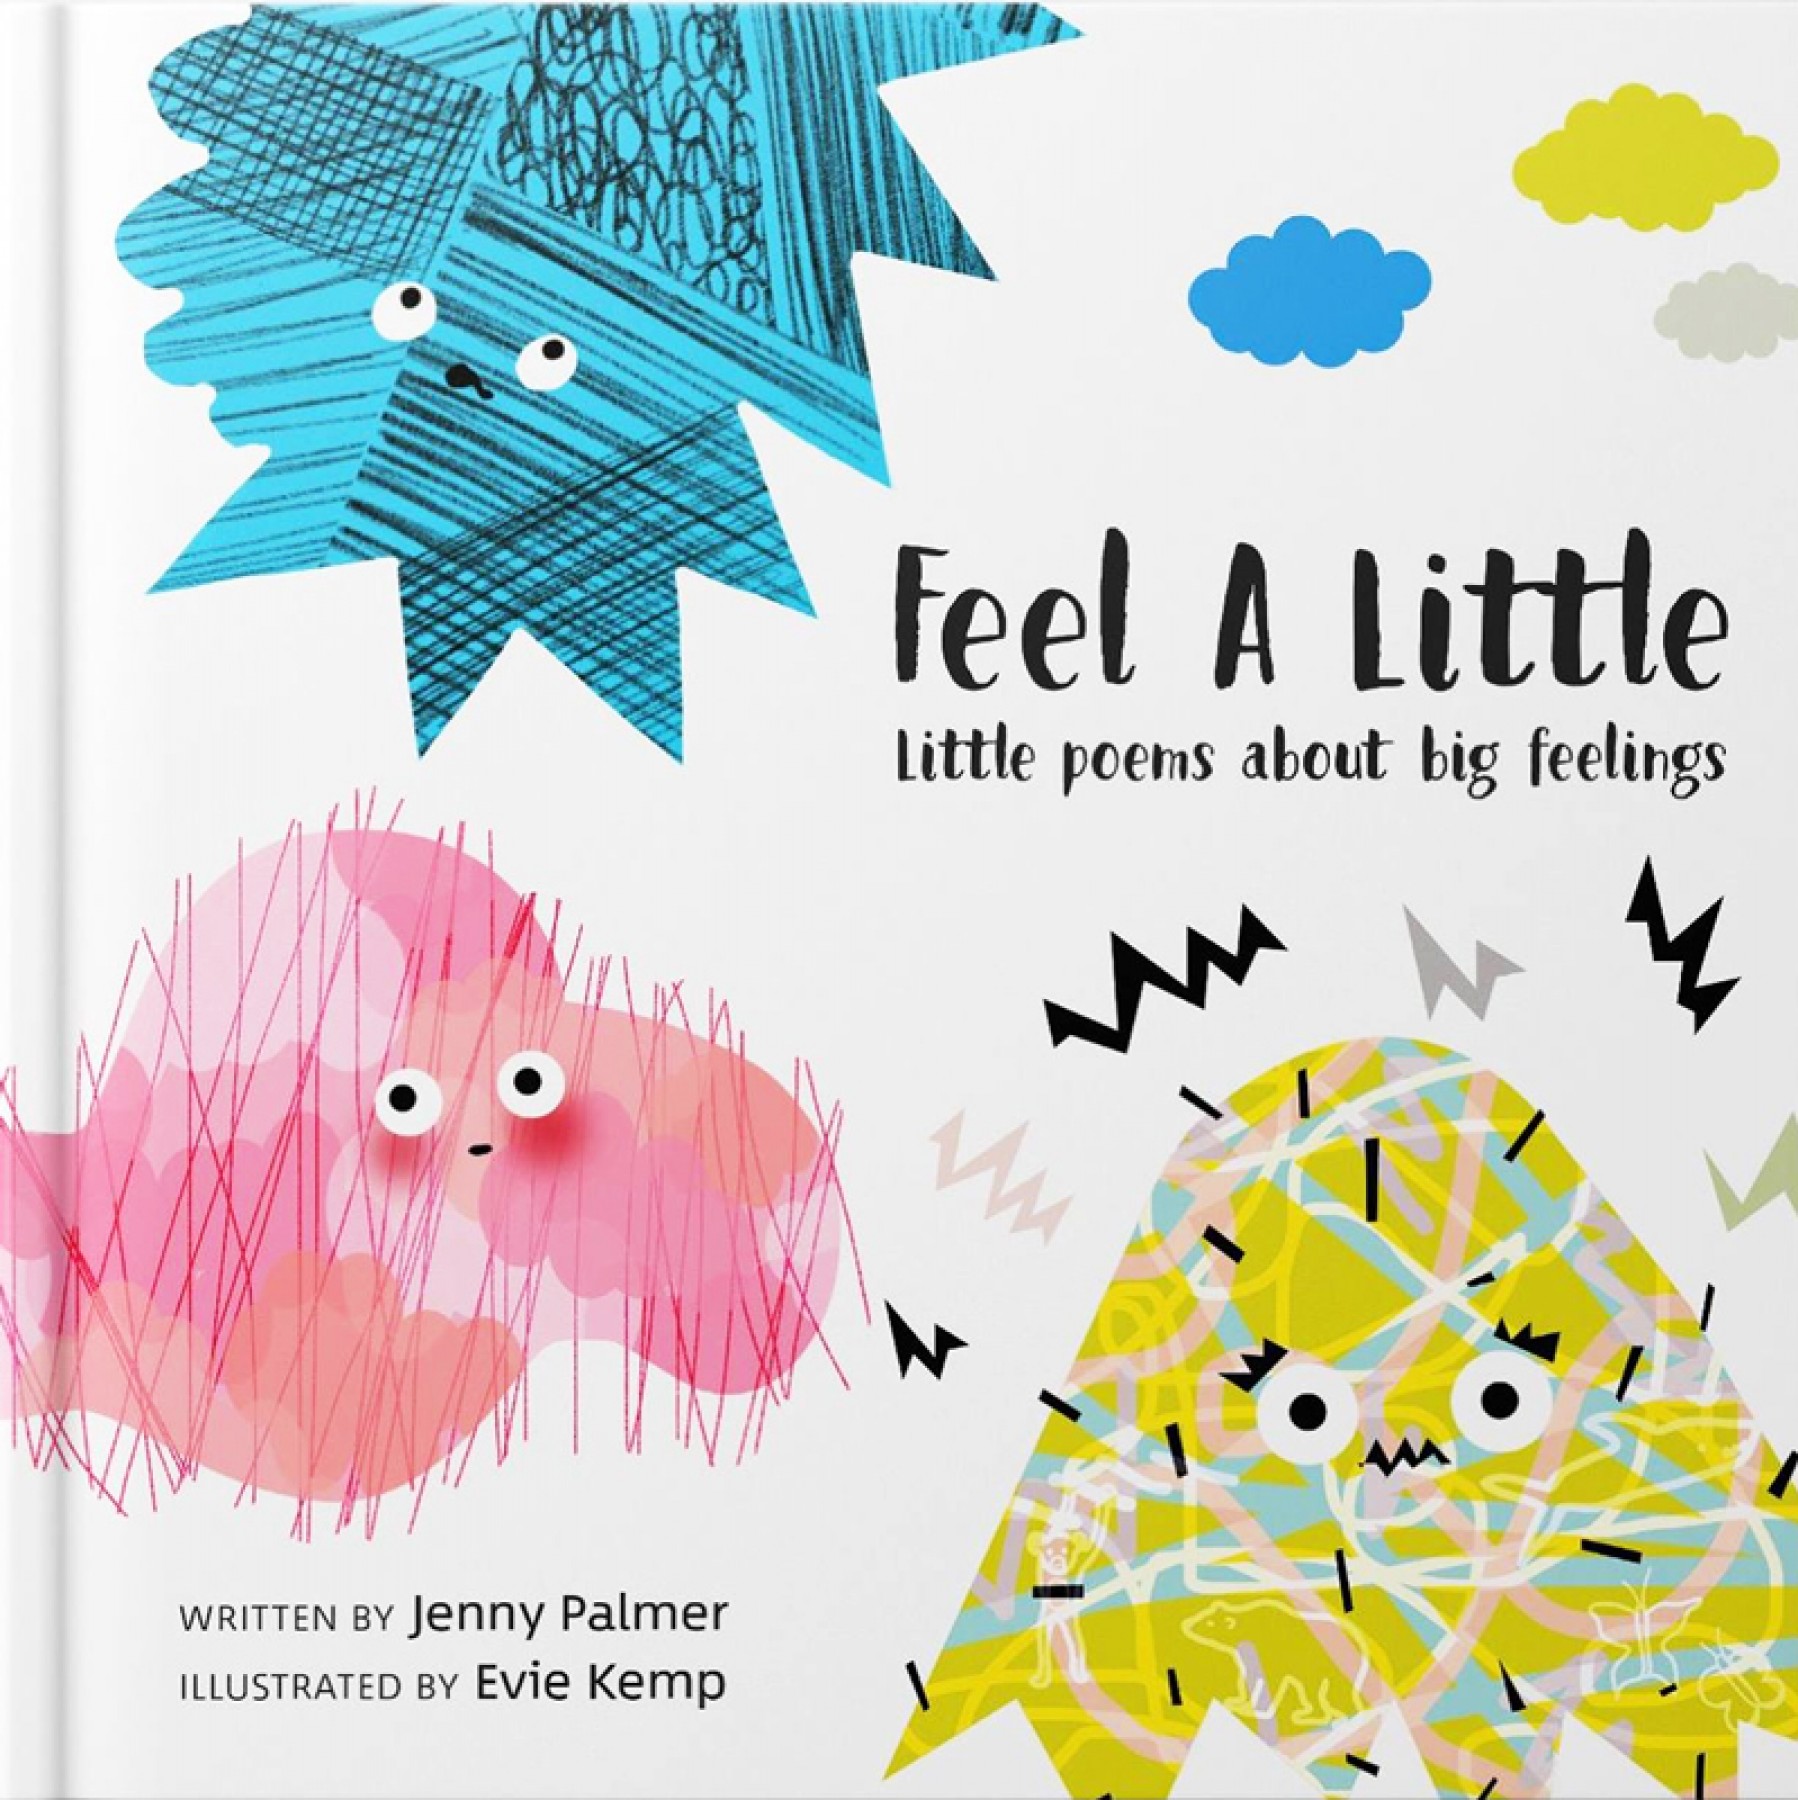 Feel a little: Little poems about big feelings